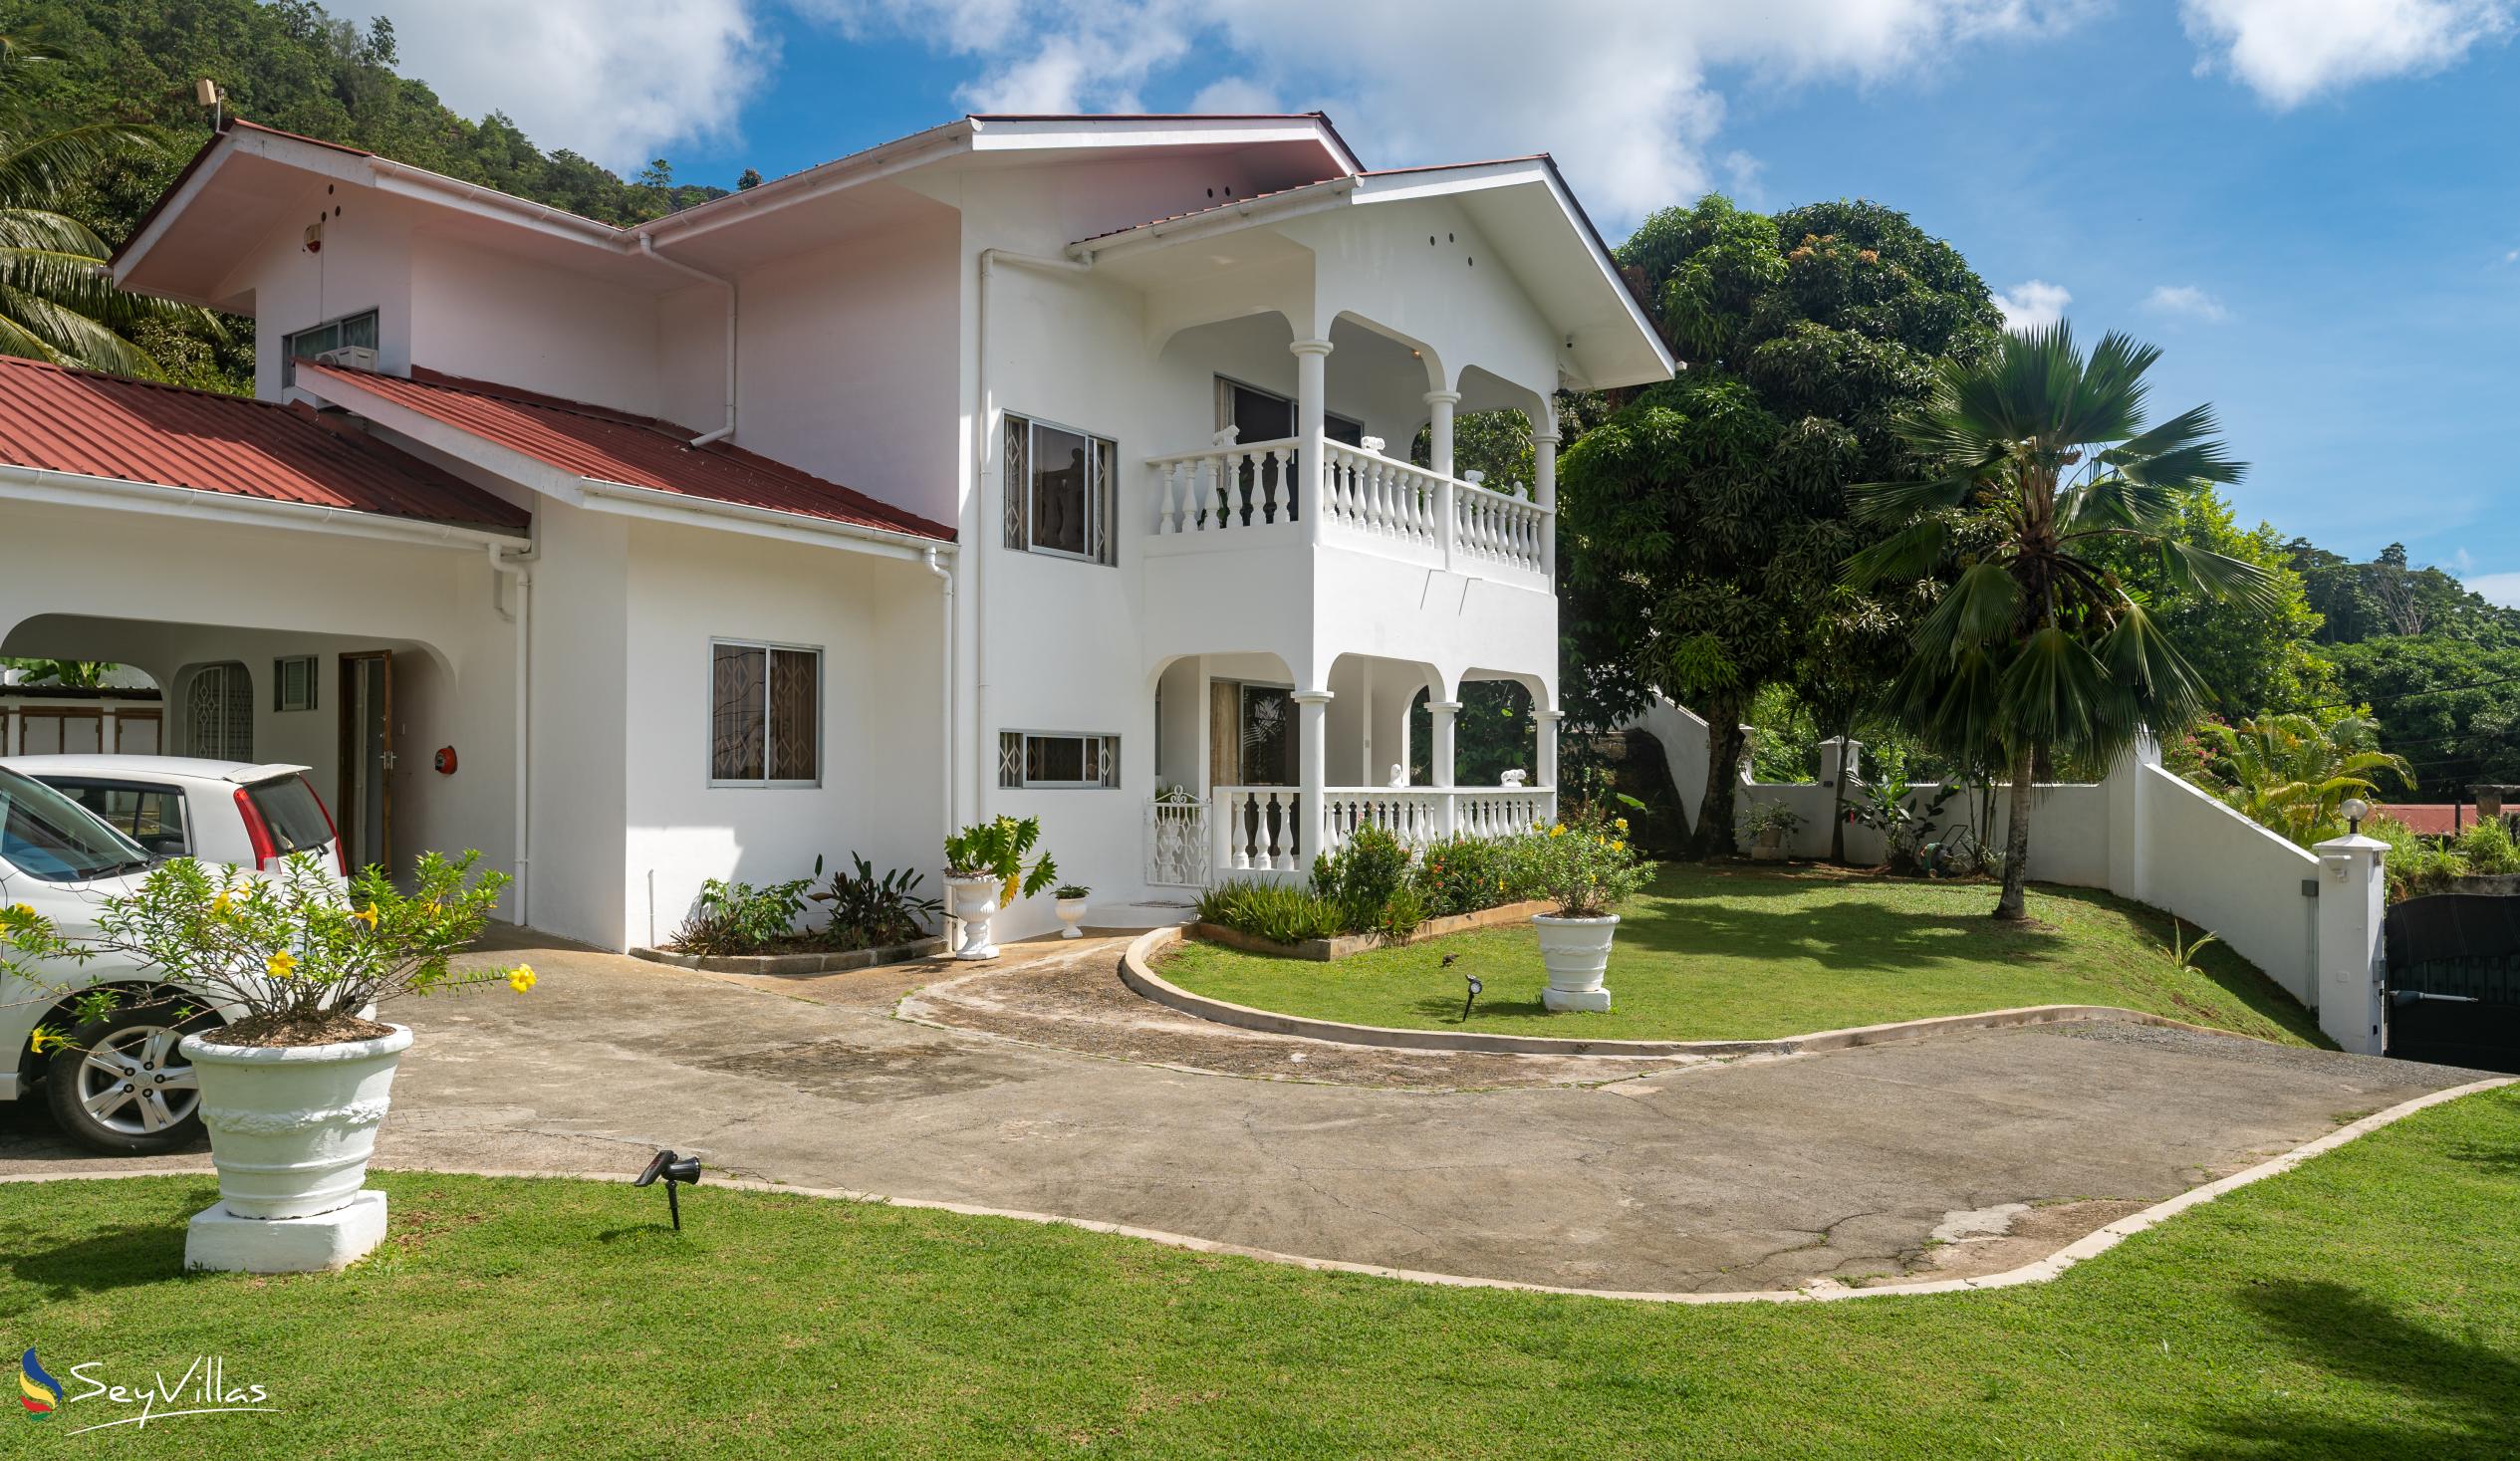 Foto 8: Villa Verde - Aussenbereich - Mahé (Seychellen)